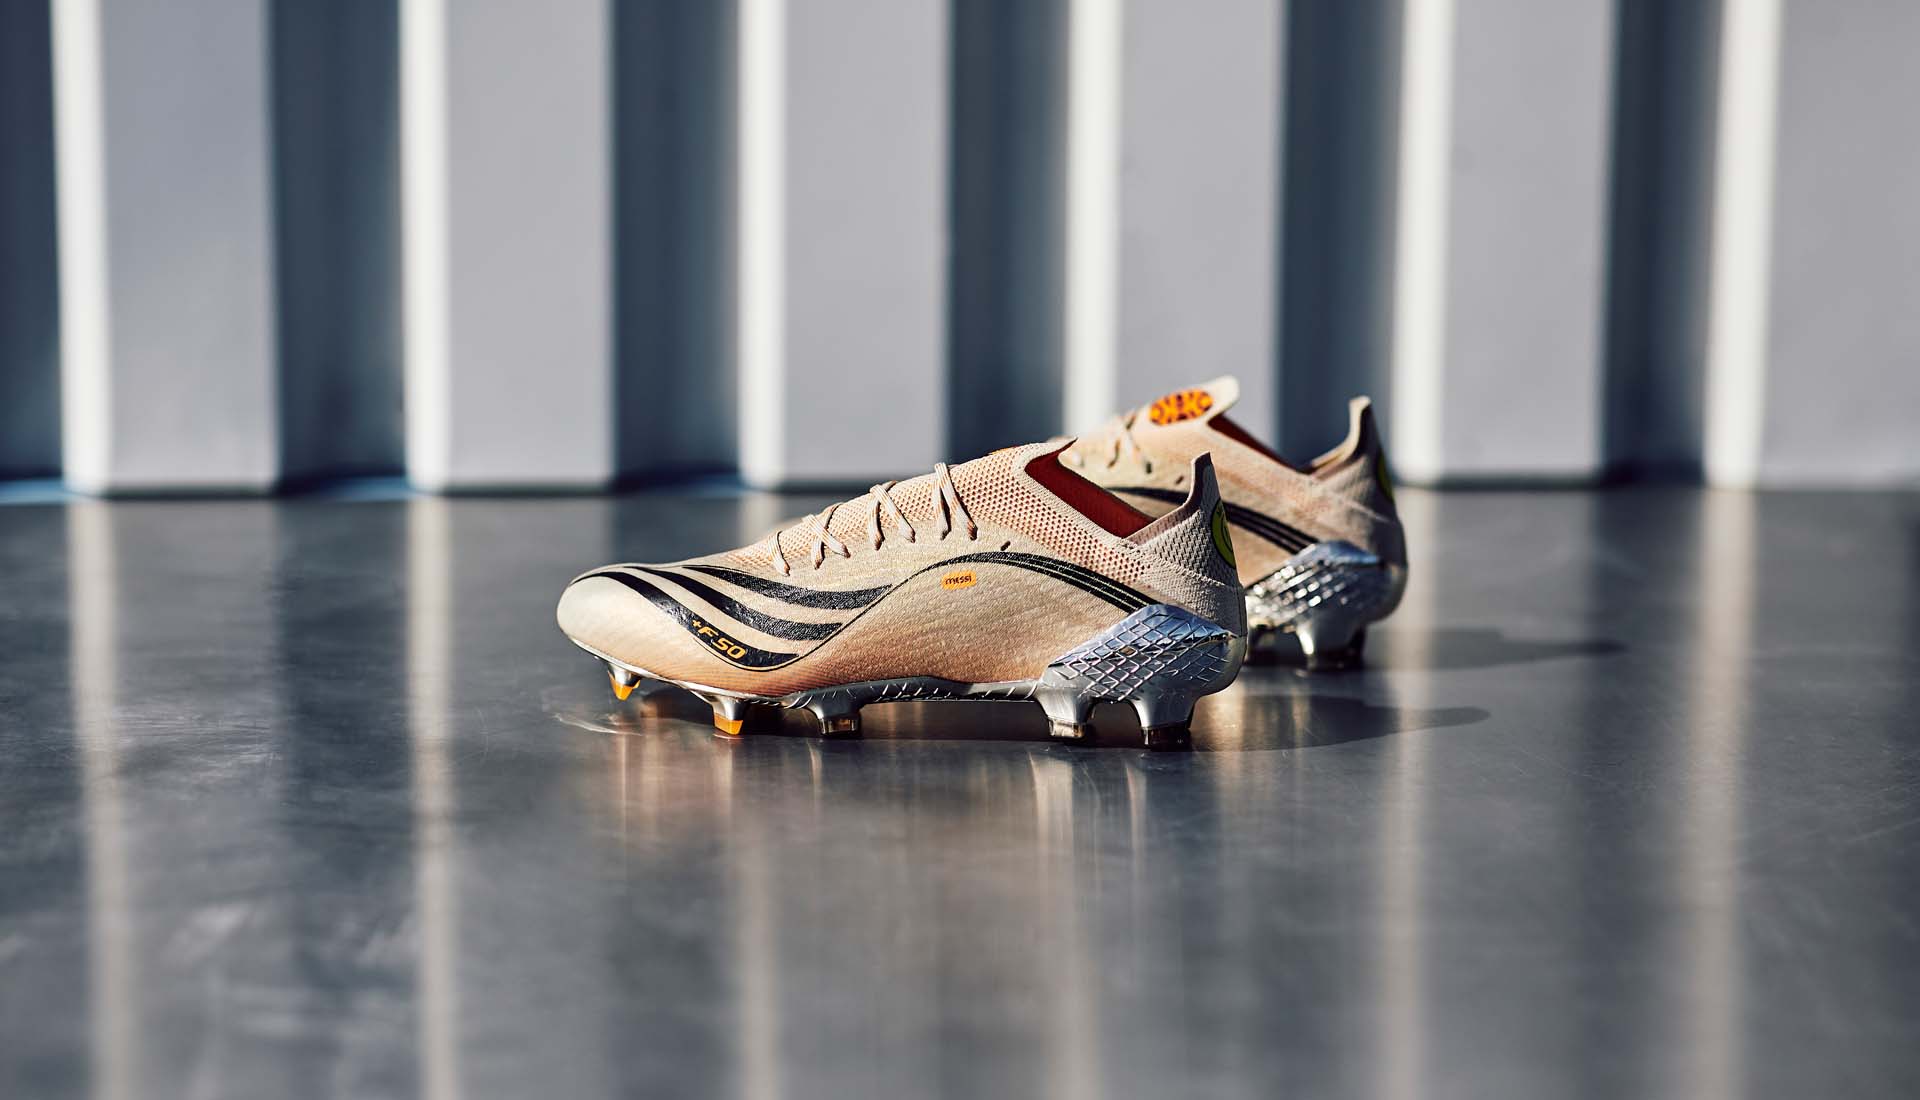 Adidas ra mắt phiên bản đặc biệt dành cho Messi - Phiên bản giày đá bóng thế hệ mới